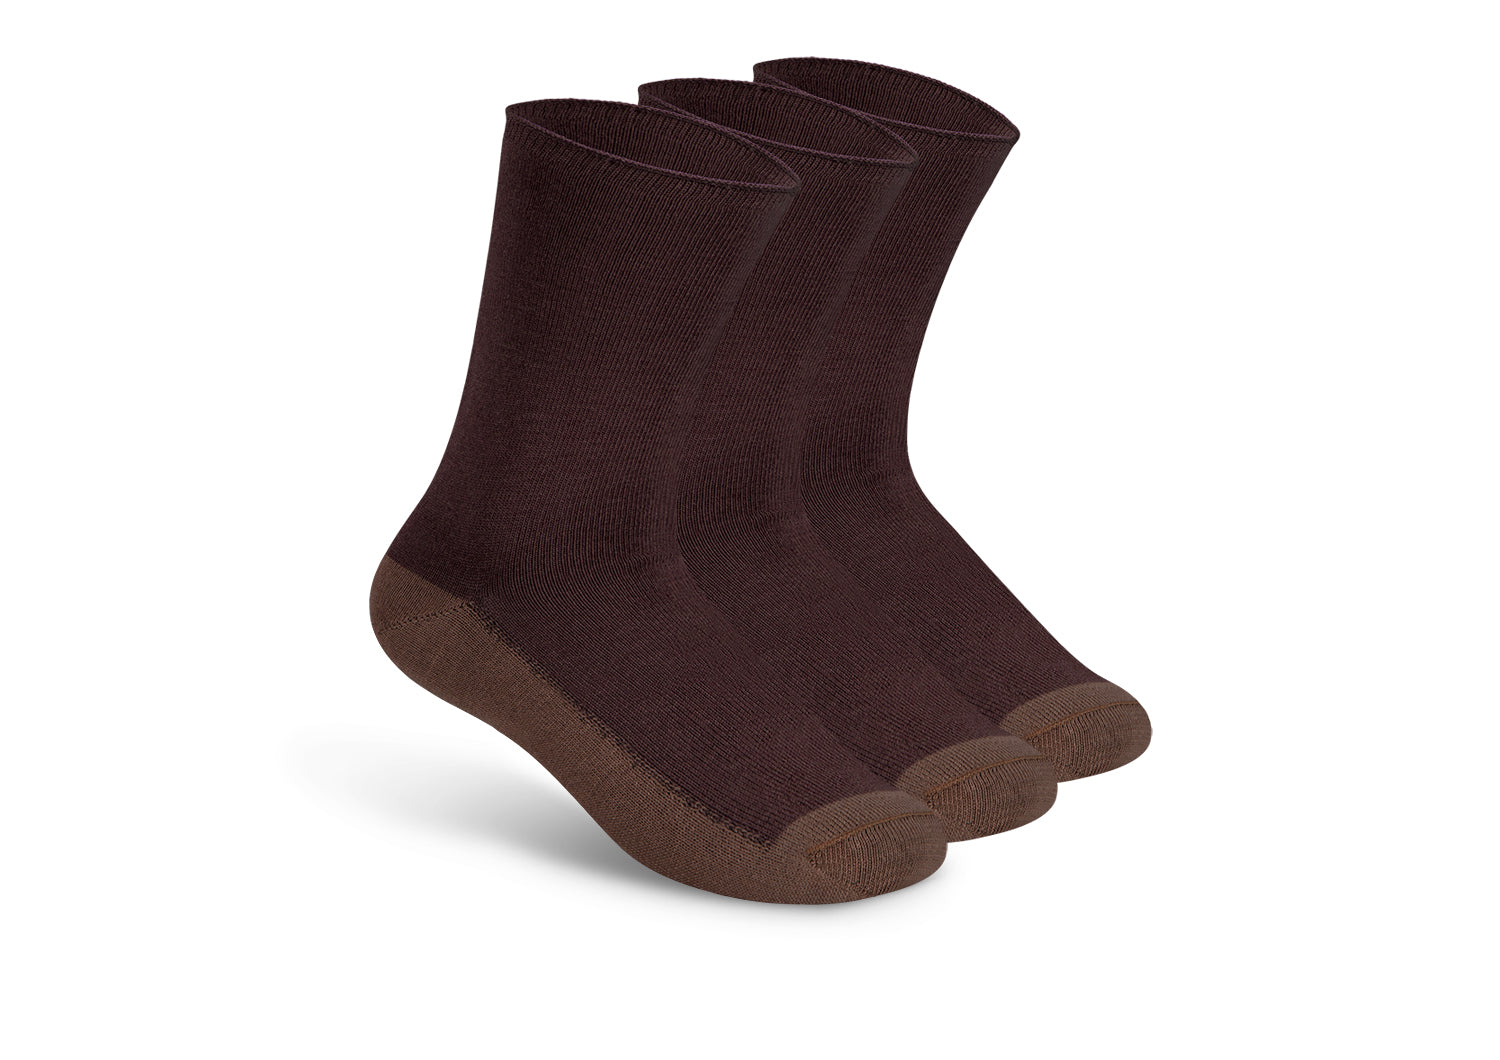 Casual/Dress Socks - Dark Brown